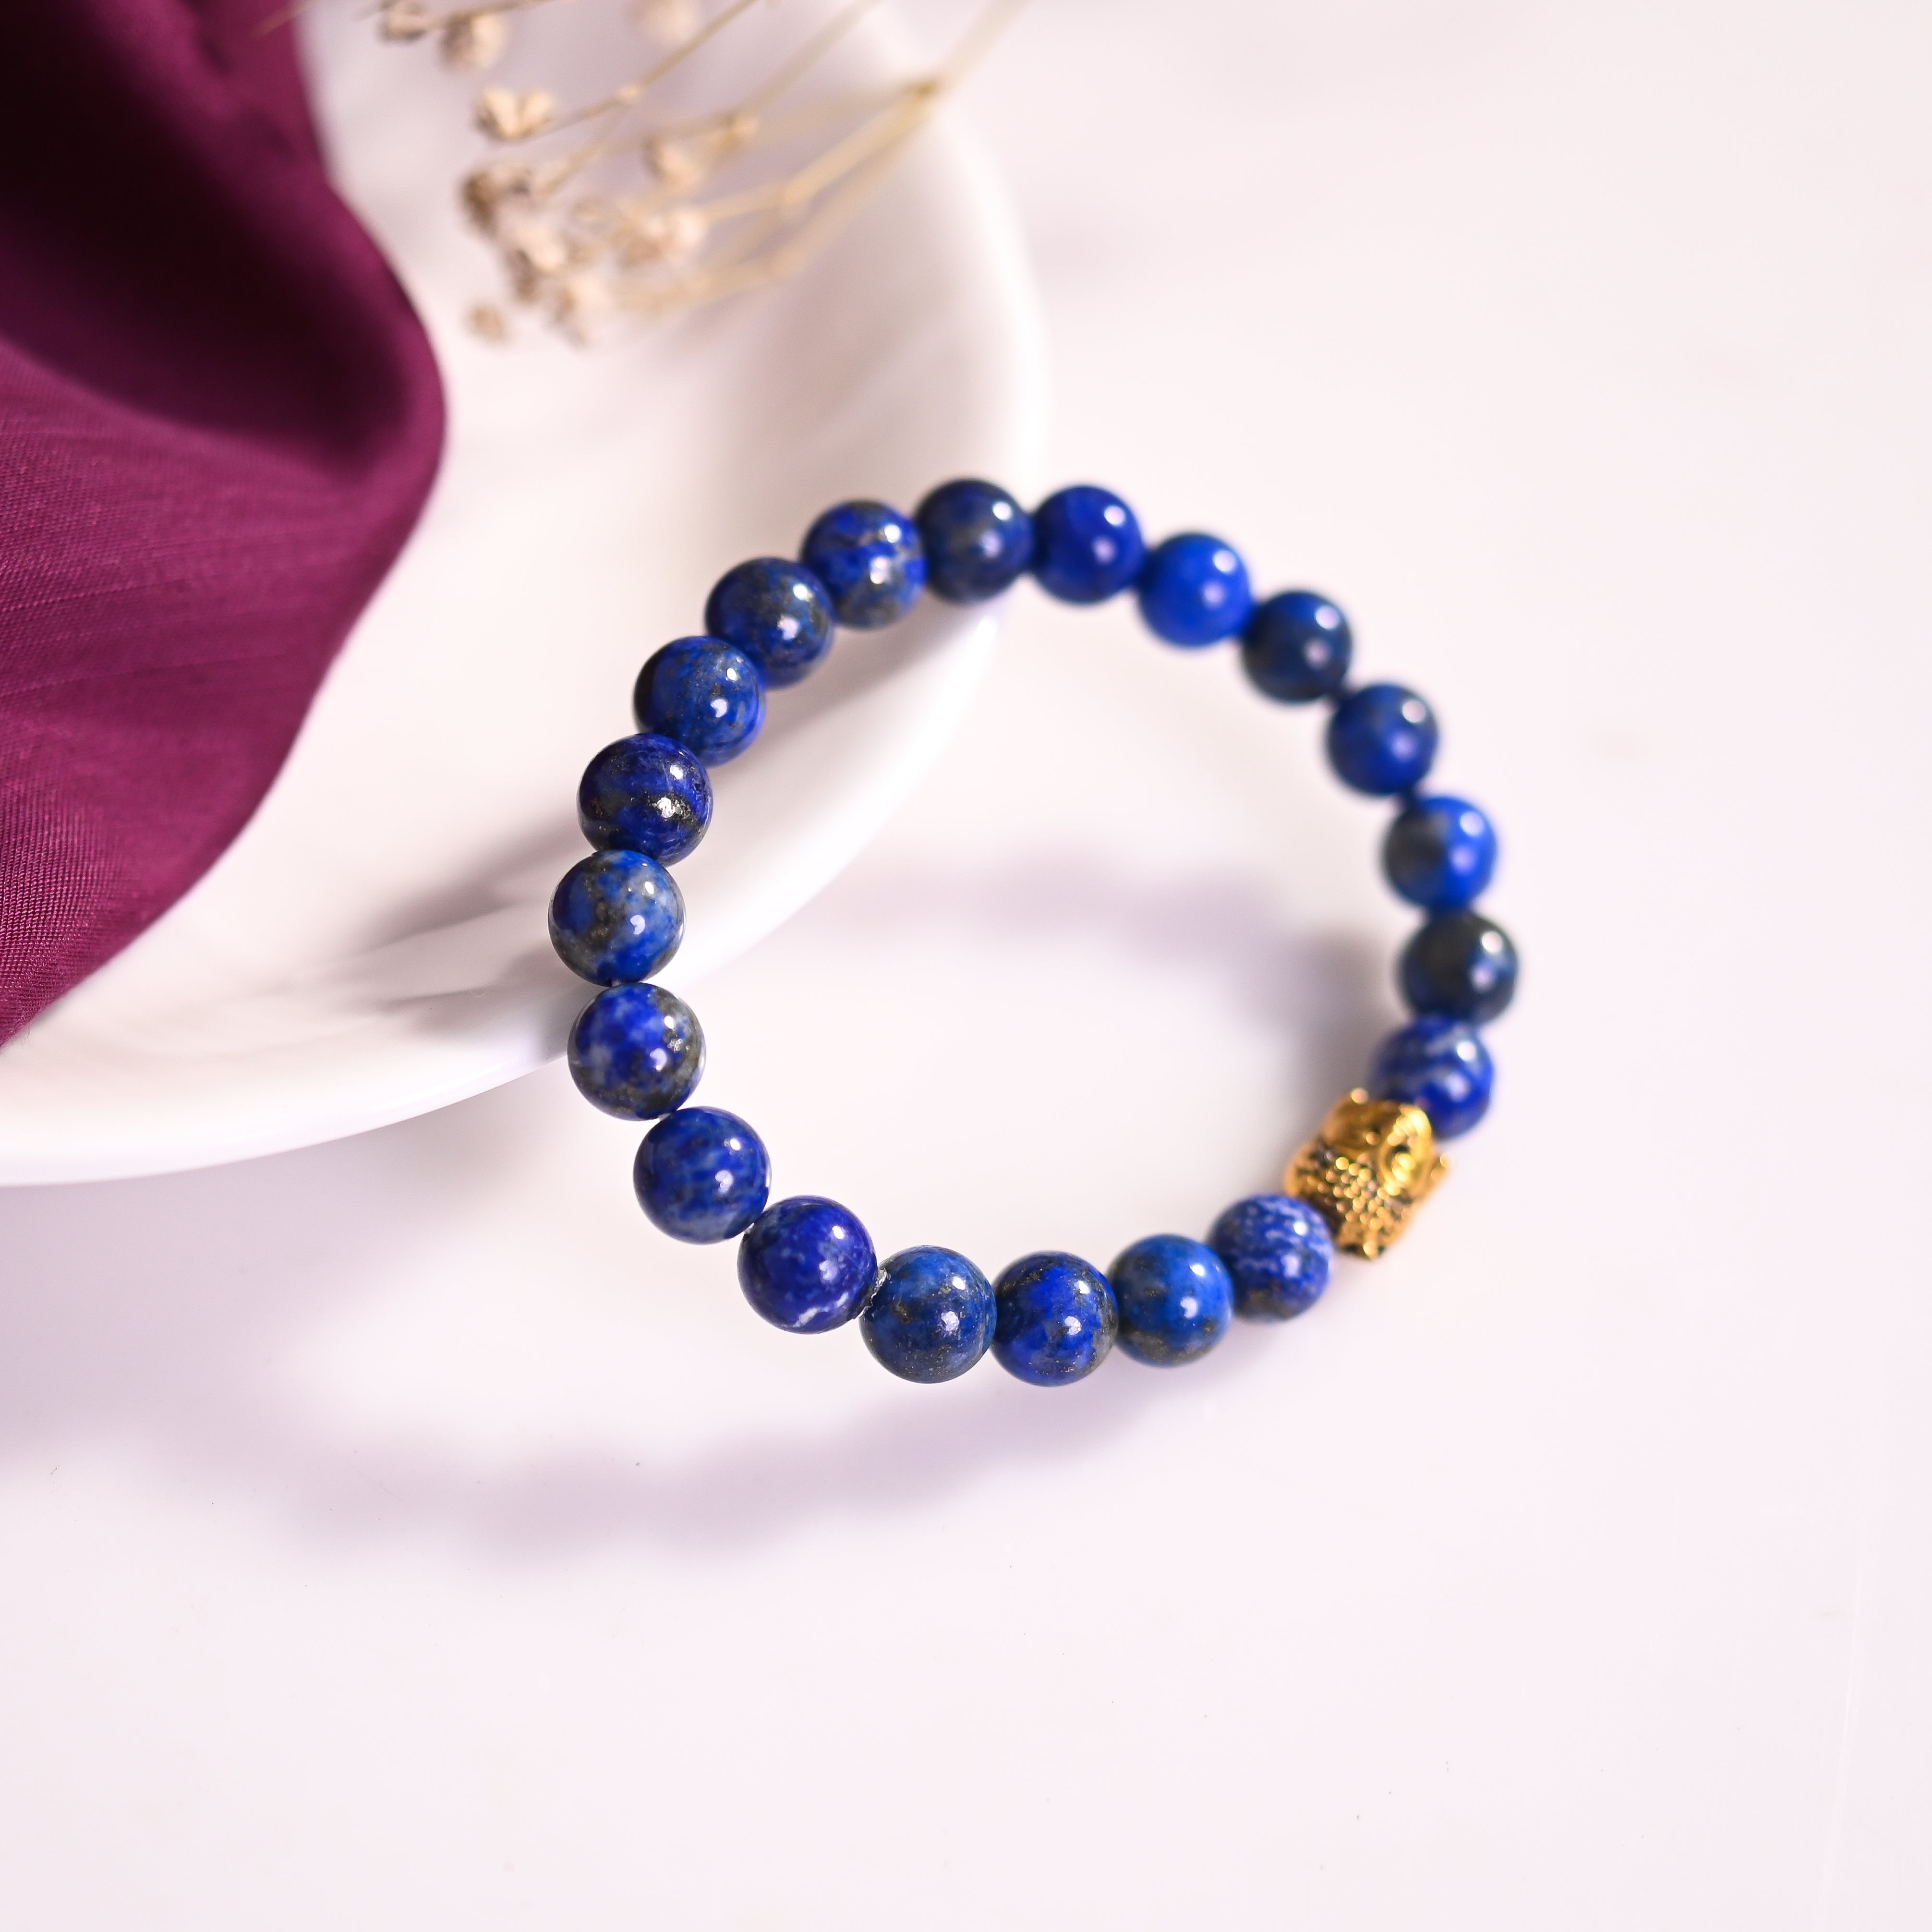 Lapis Lazuli Blue for increase in self awareness